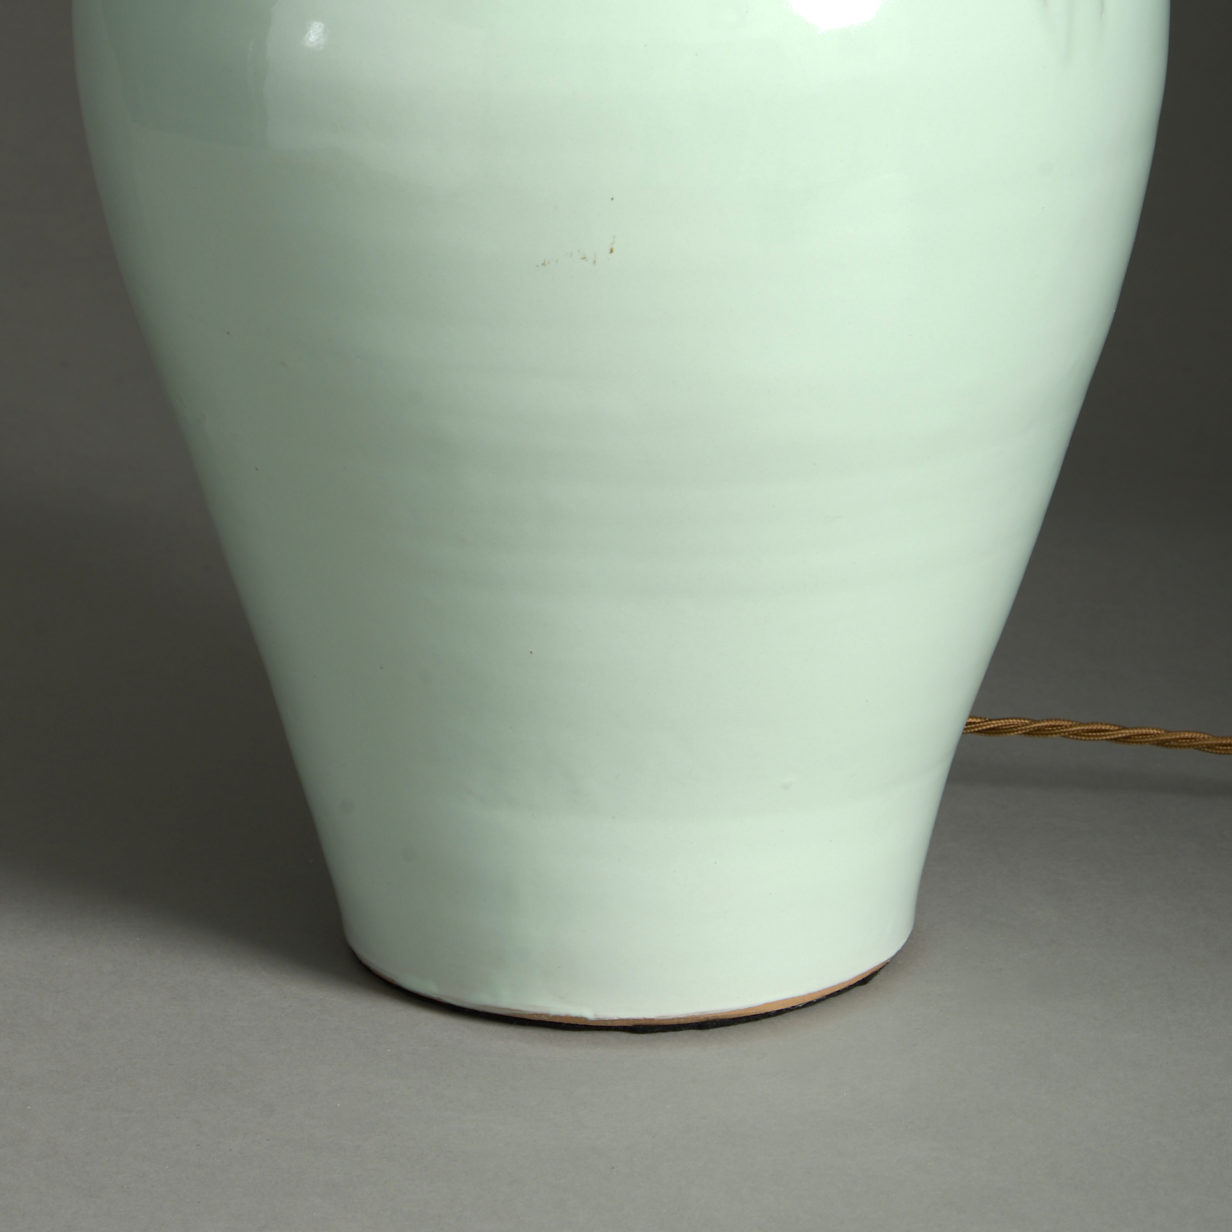 Green glazed vase lamp